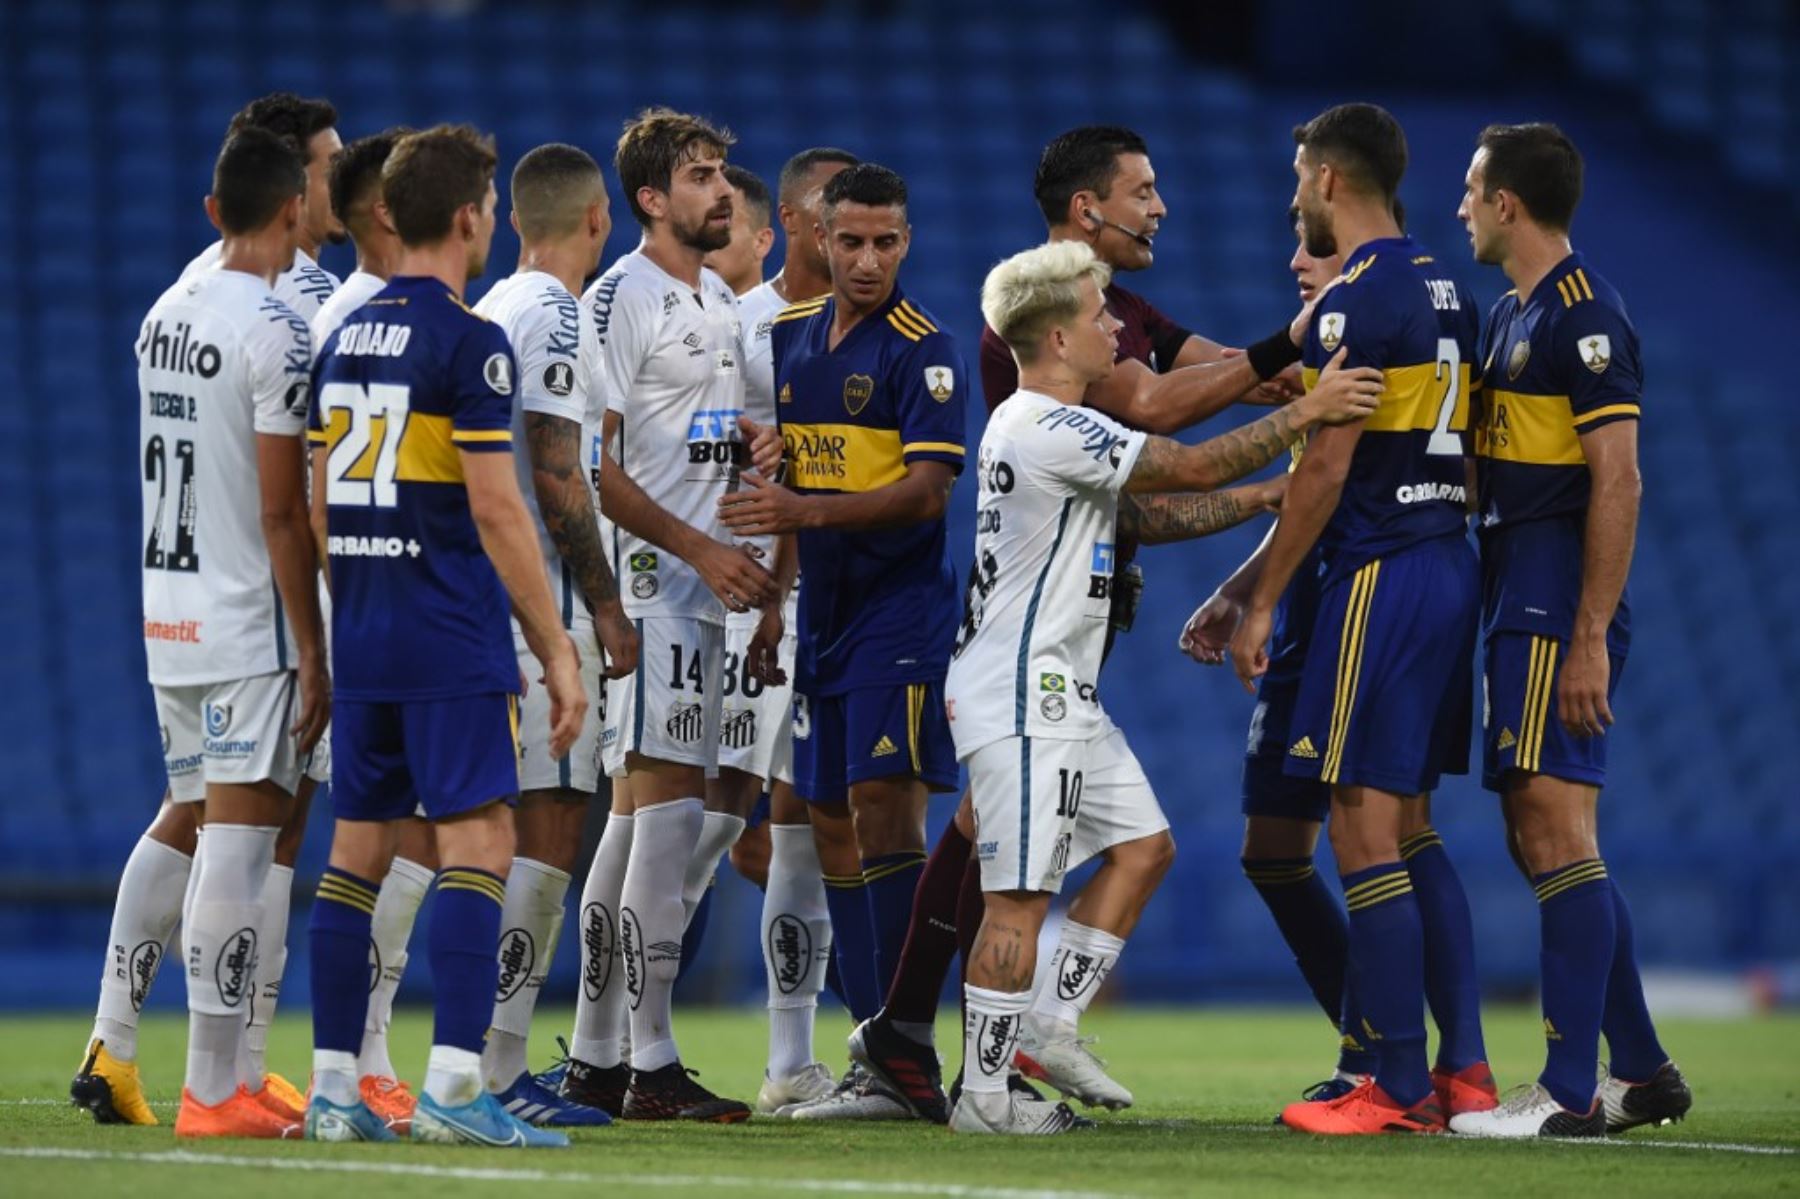 Boca Juniors de Argentina y Santos F.C de Brasil se enfrentan en La Bombonera en el partido de ida de las semifinales de la Copa Libertadores. Foto: AFP